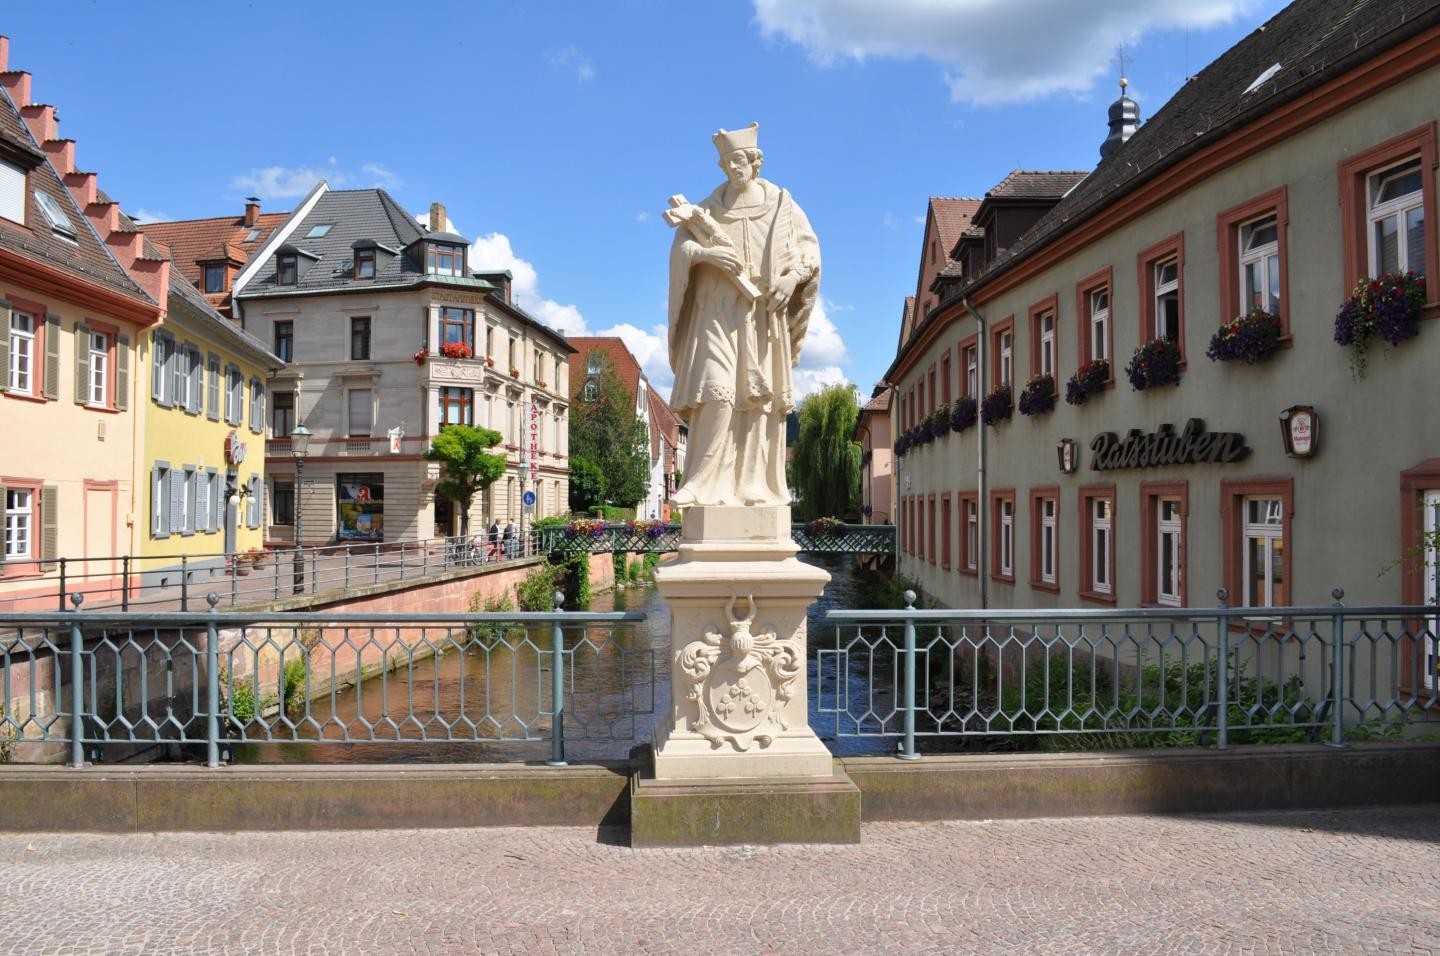 Nepomukstatue auf der Rathausbrücke